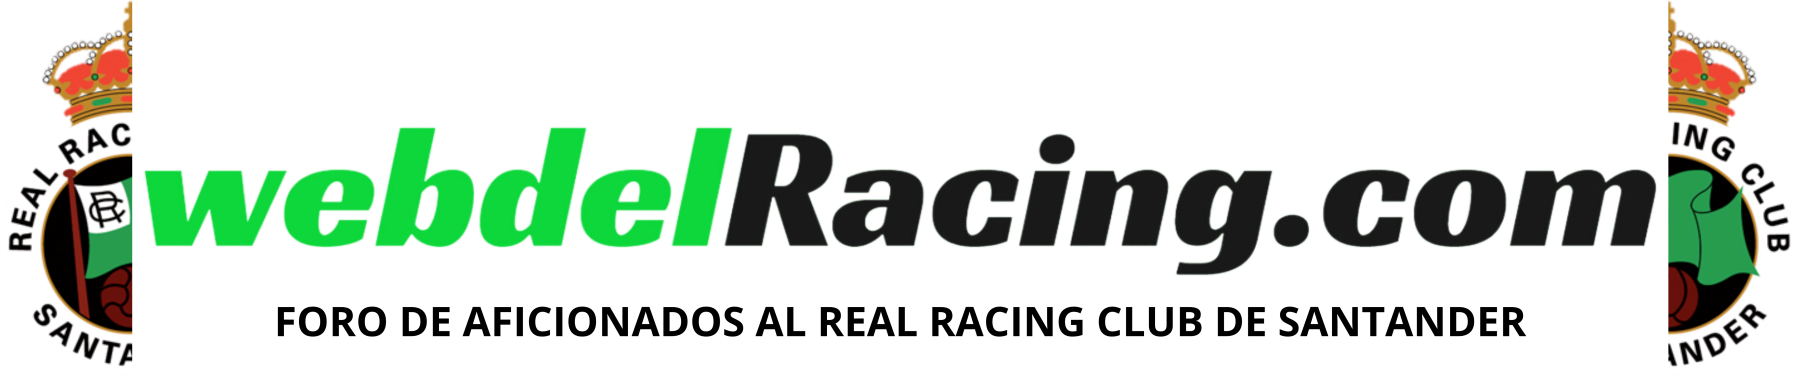 Web del Racing - Todo sobre el Real Racing Club